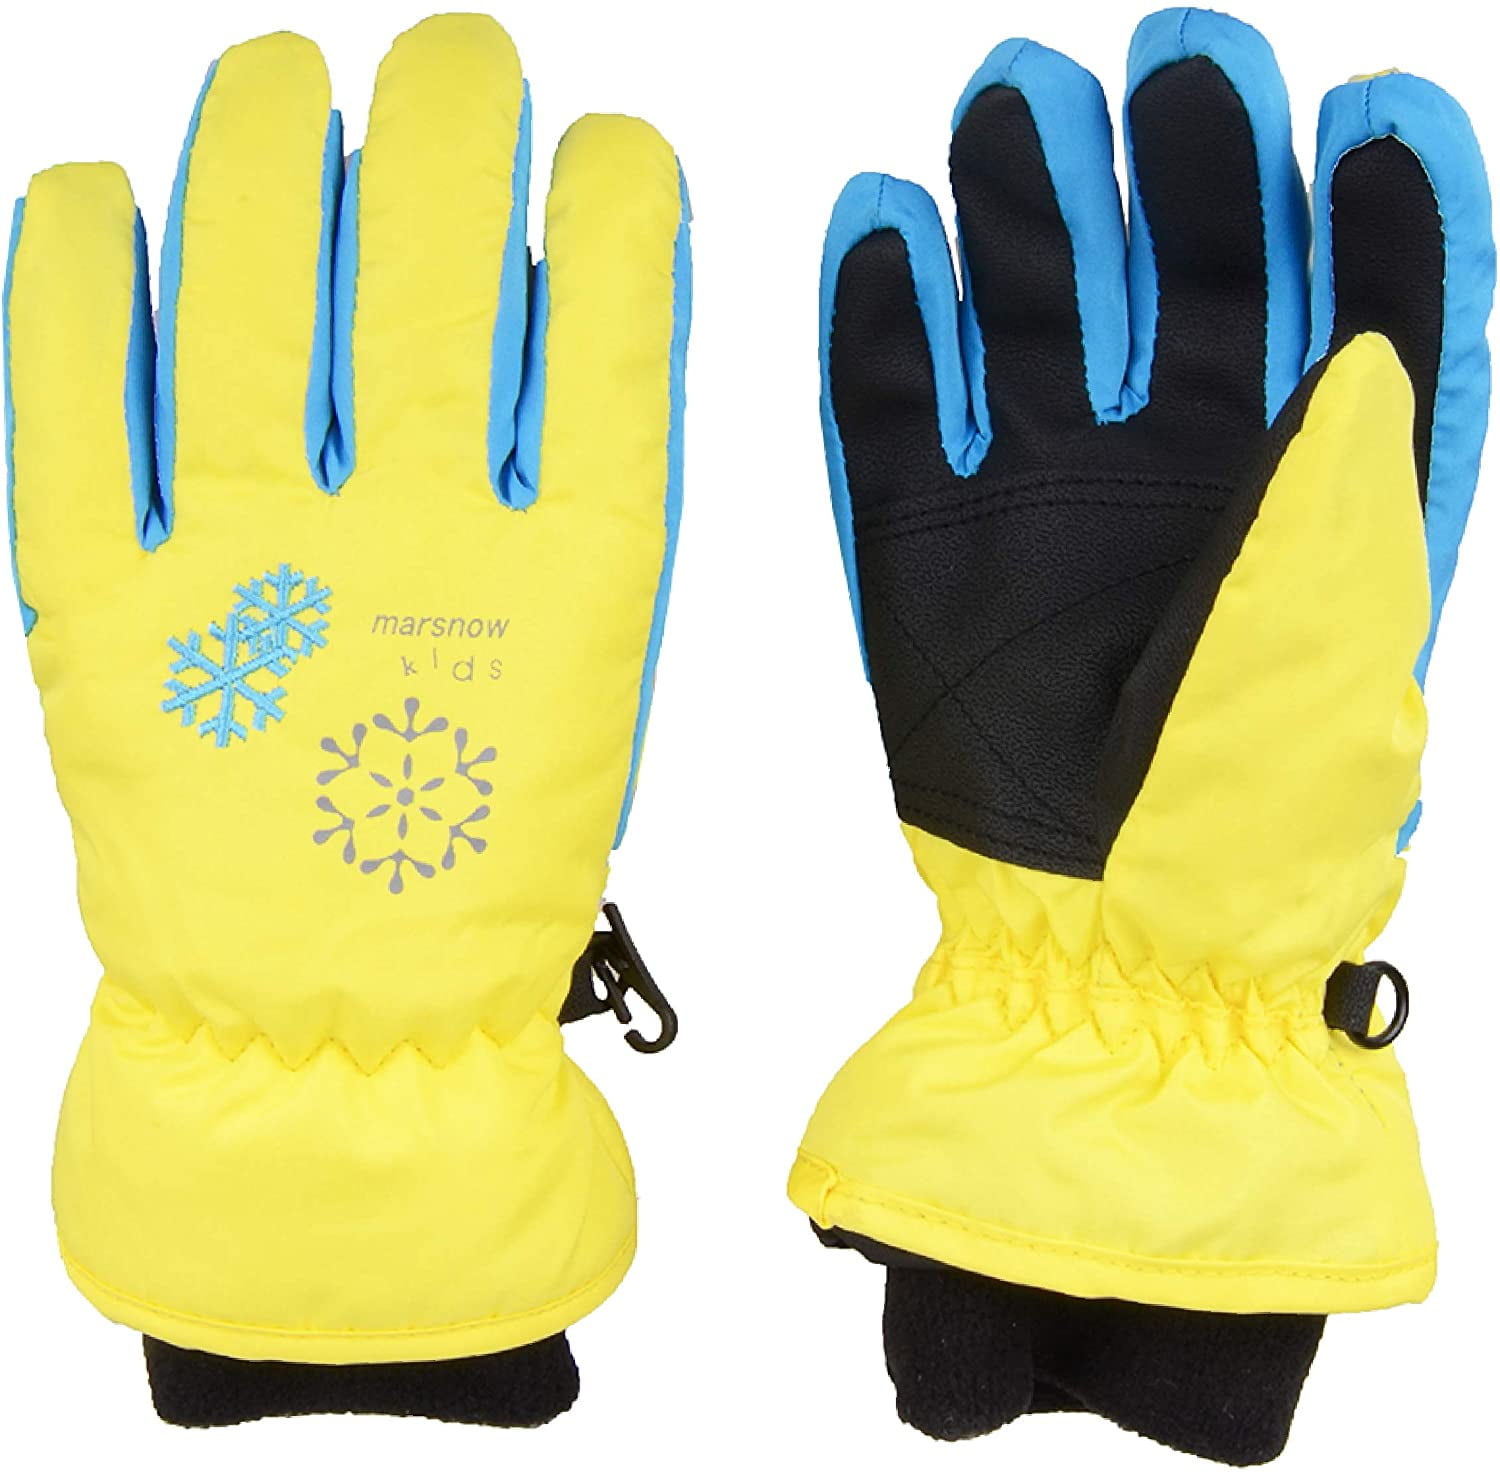 XTACER Kids Ski Snow Gloves Snowboard Winter Warm Cold Weather Gloves for Boys Girls Children 